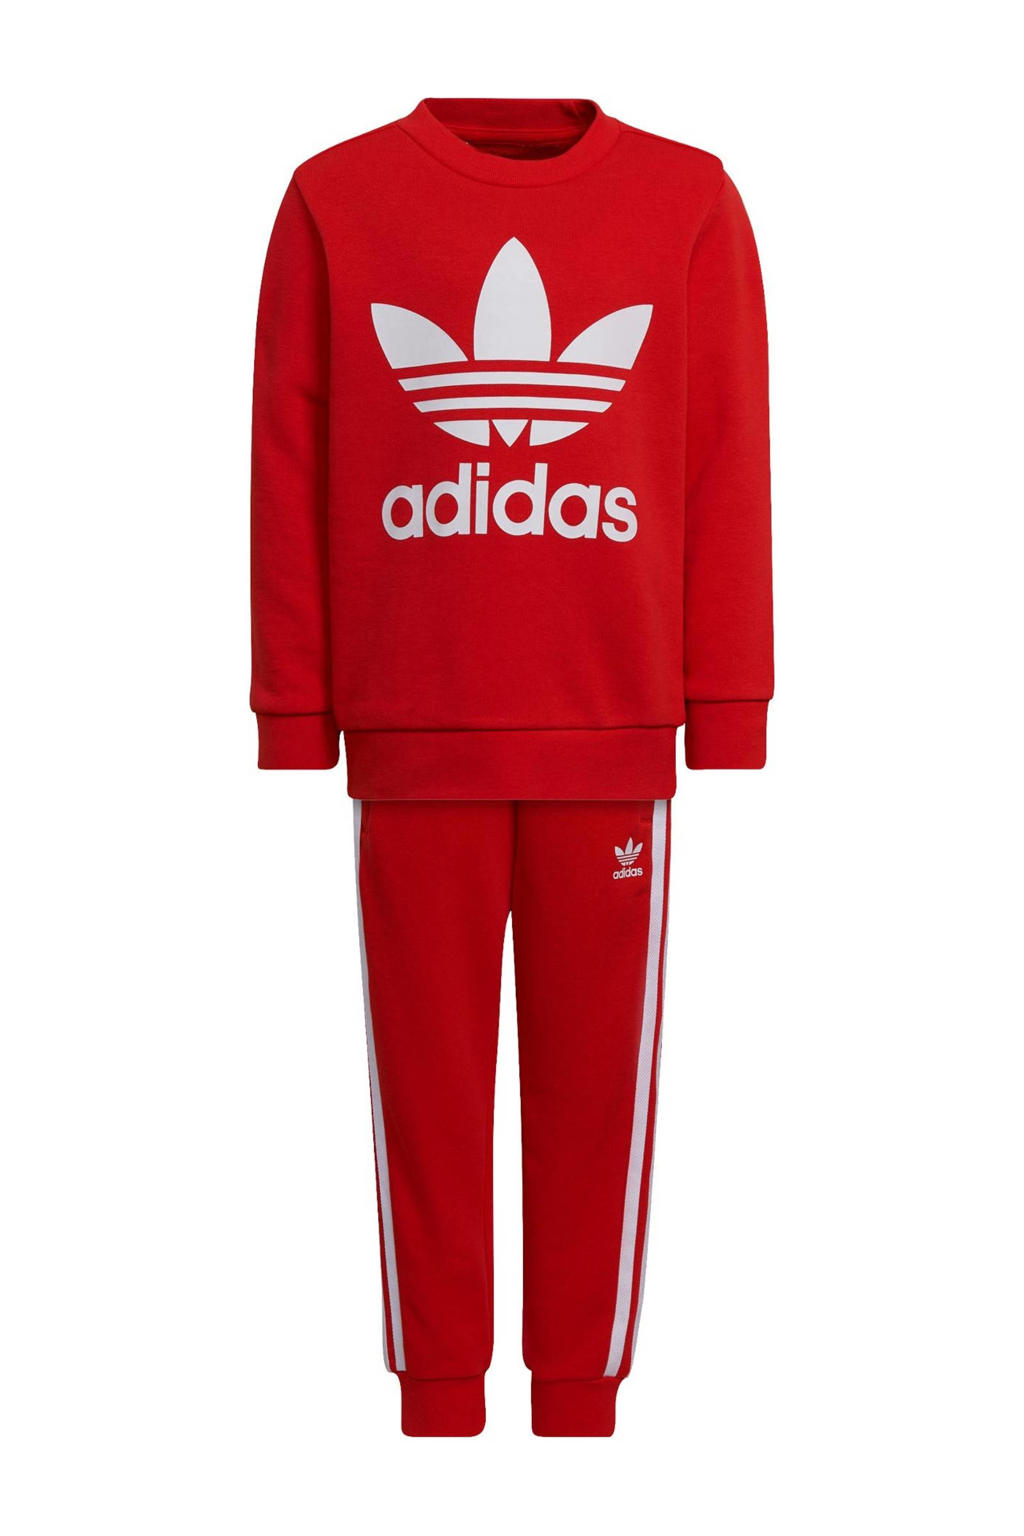 adidas Originals Adicolor joggingpak rood/wit